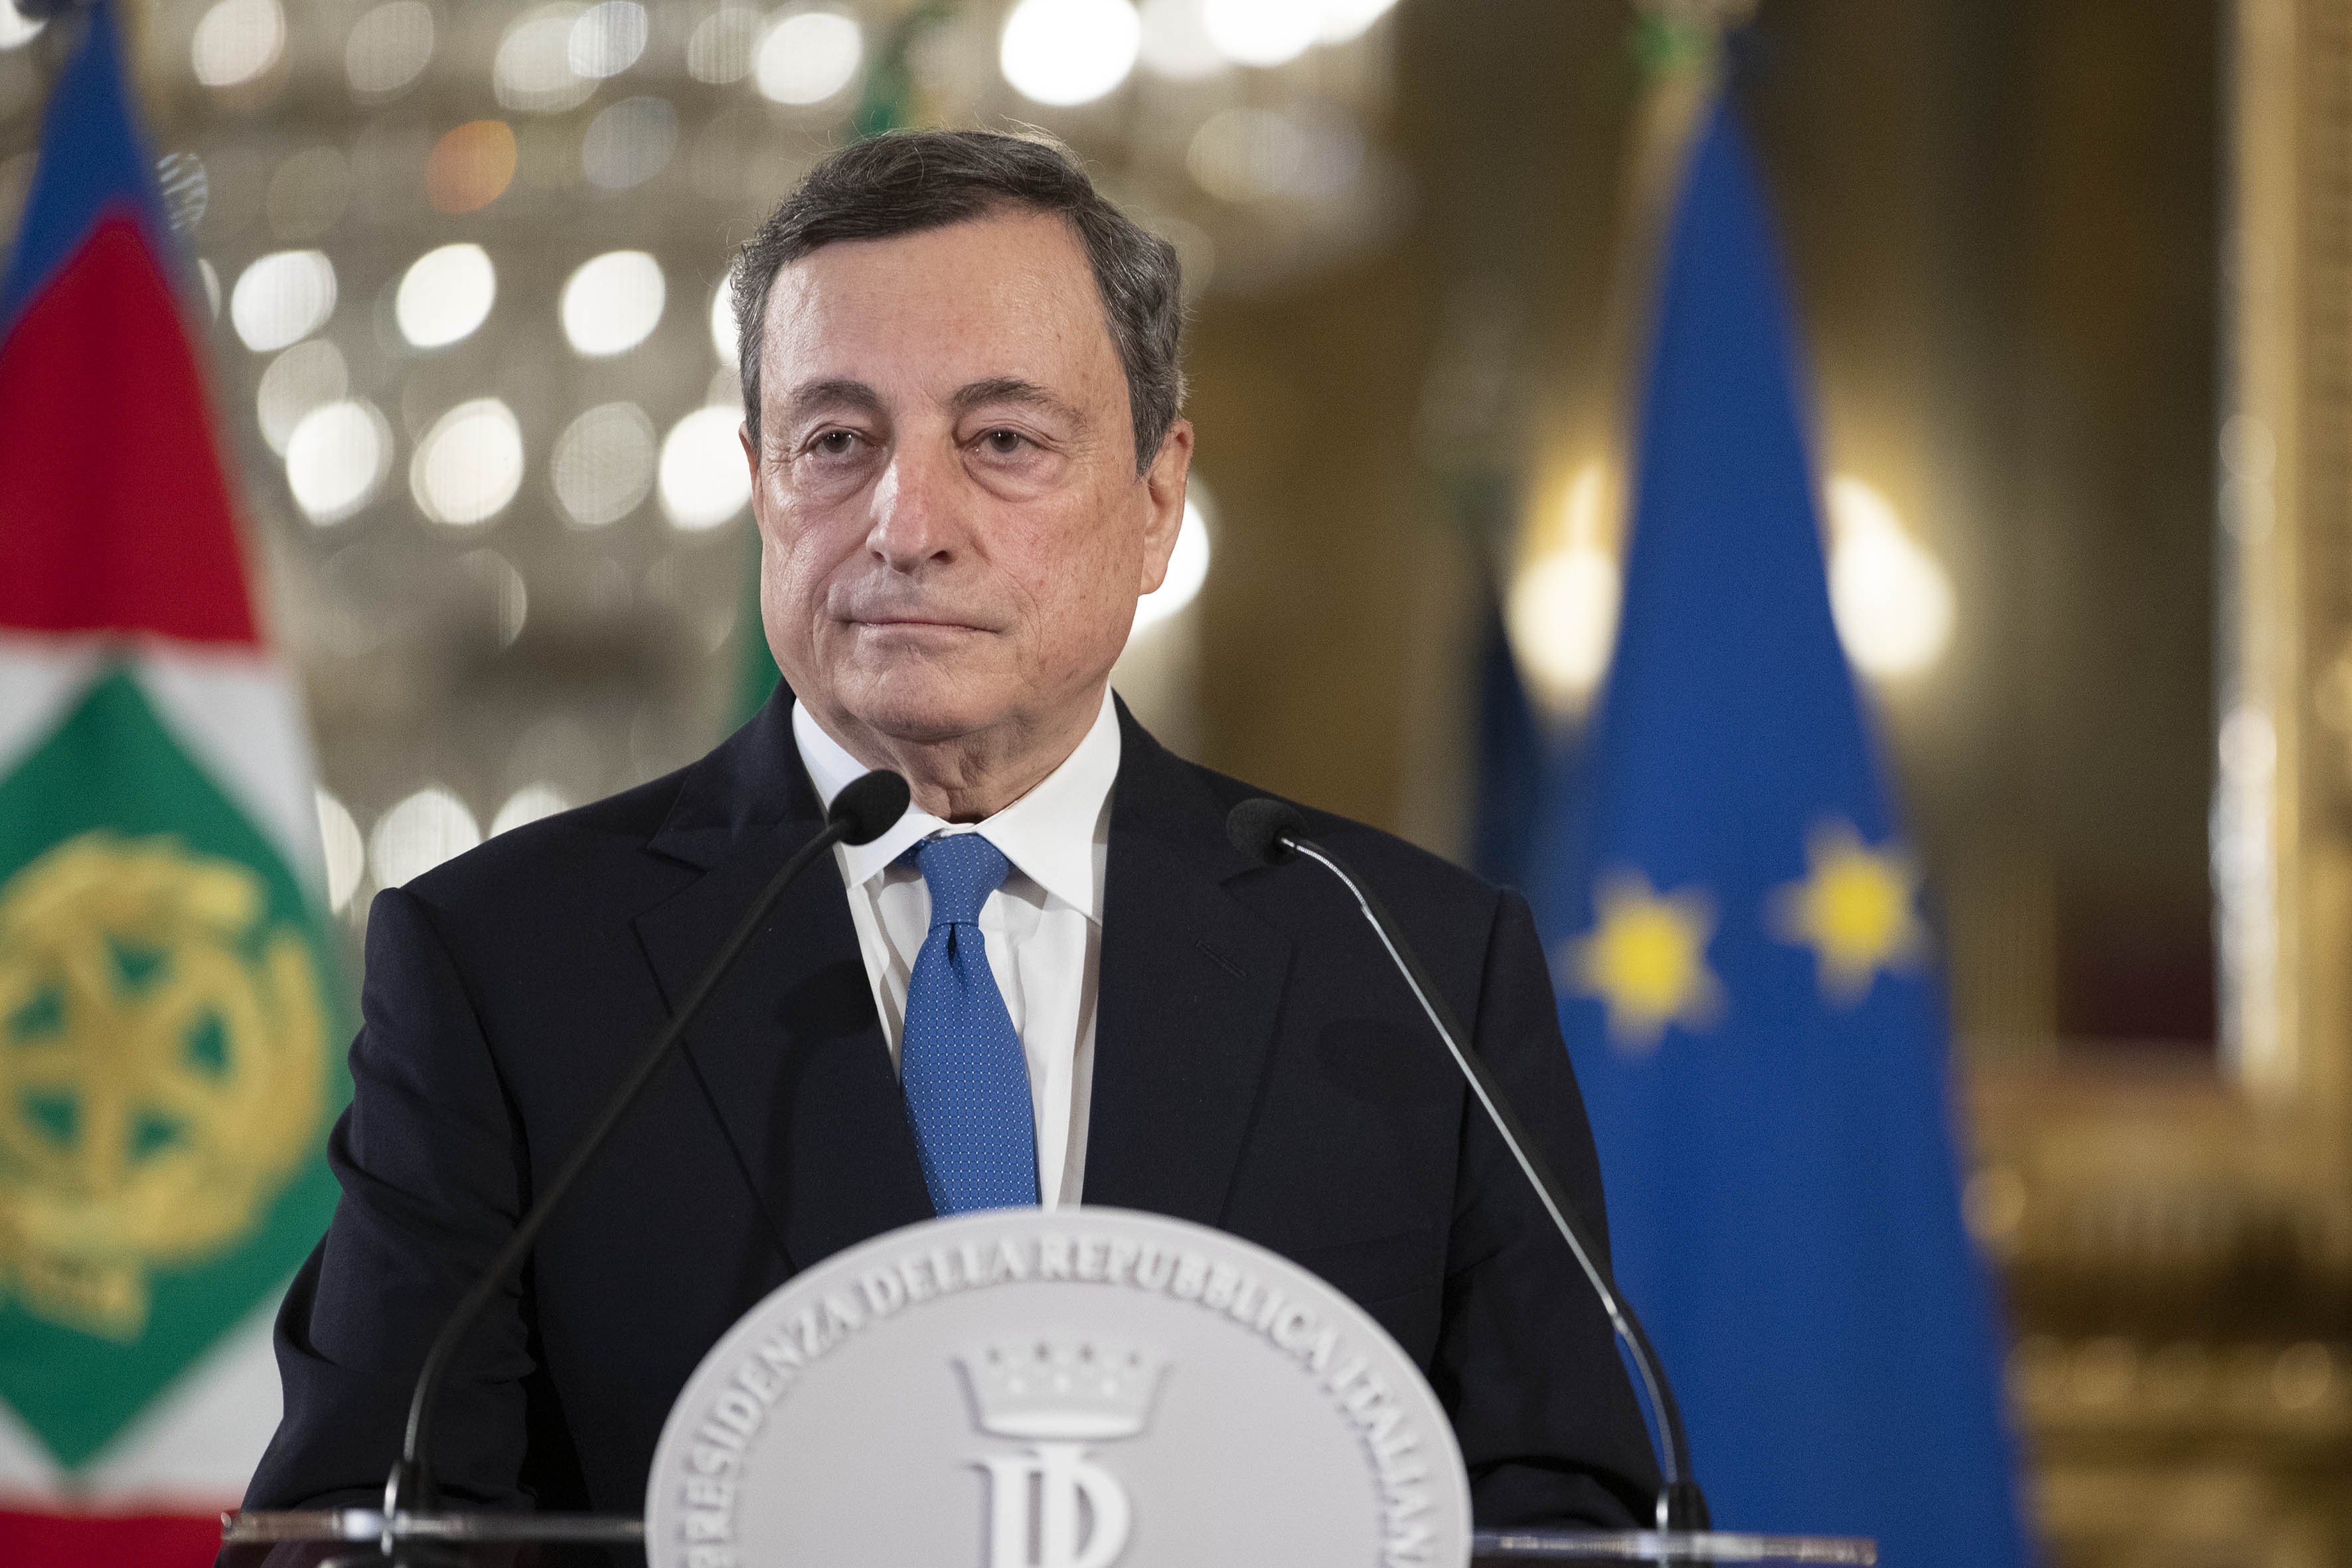 Mario Draghi al Quirinale